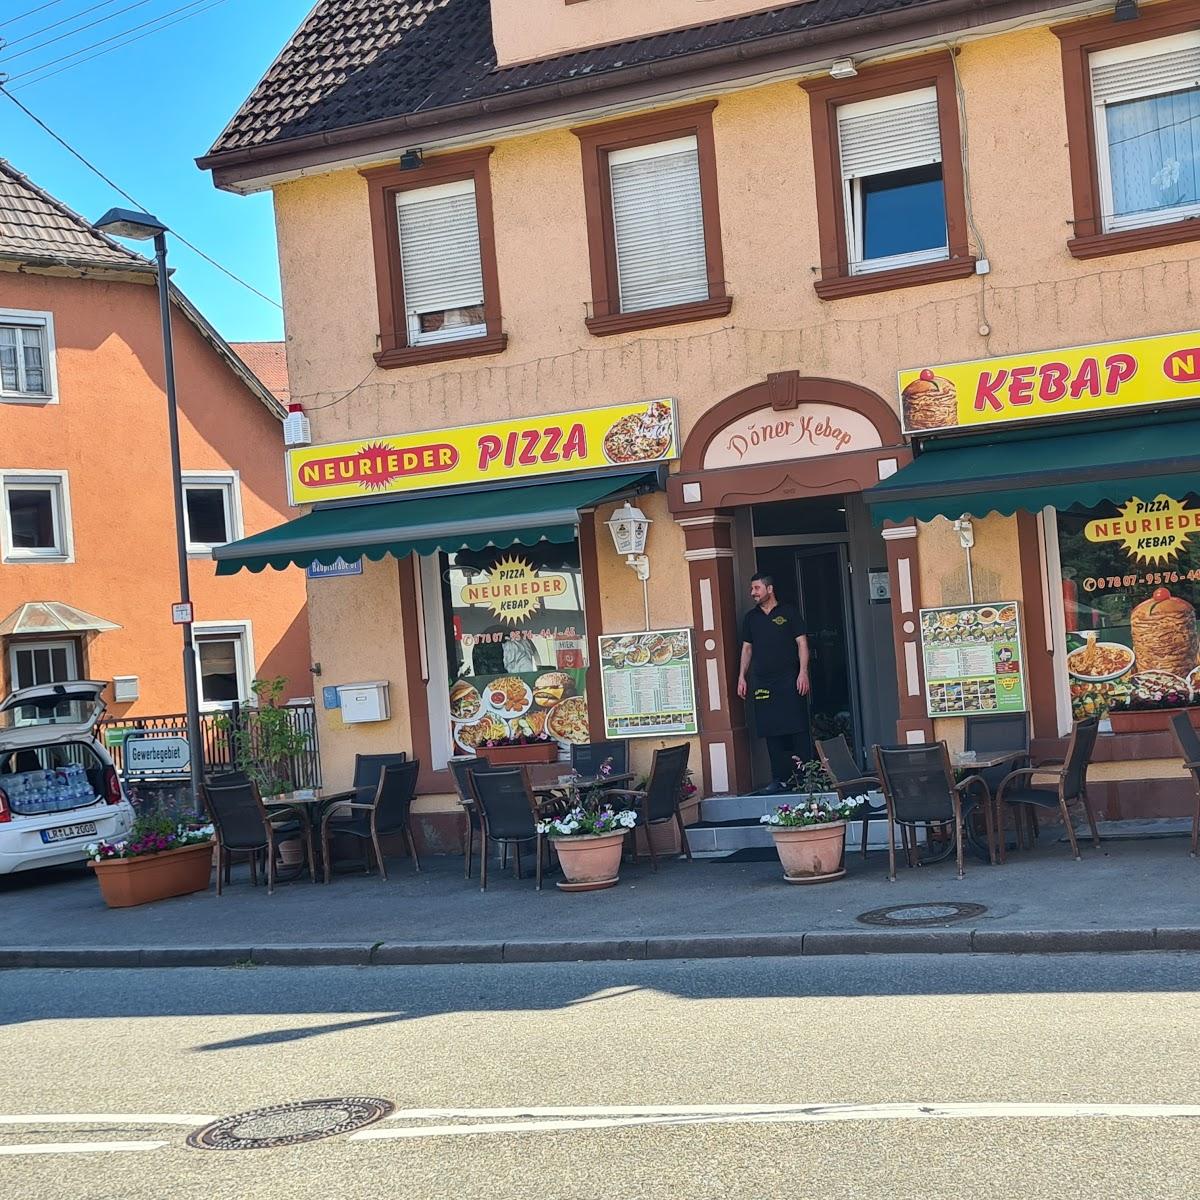 Restaurant "er Pizza Kebap" in Neuried